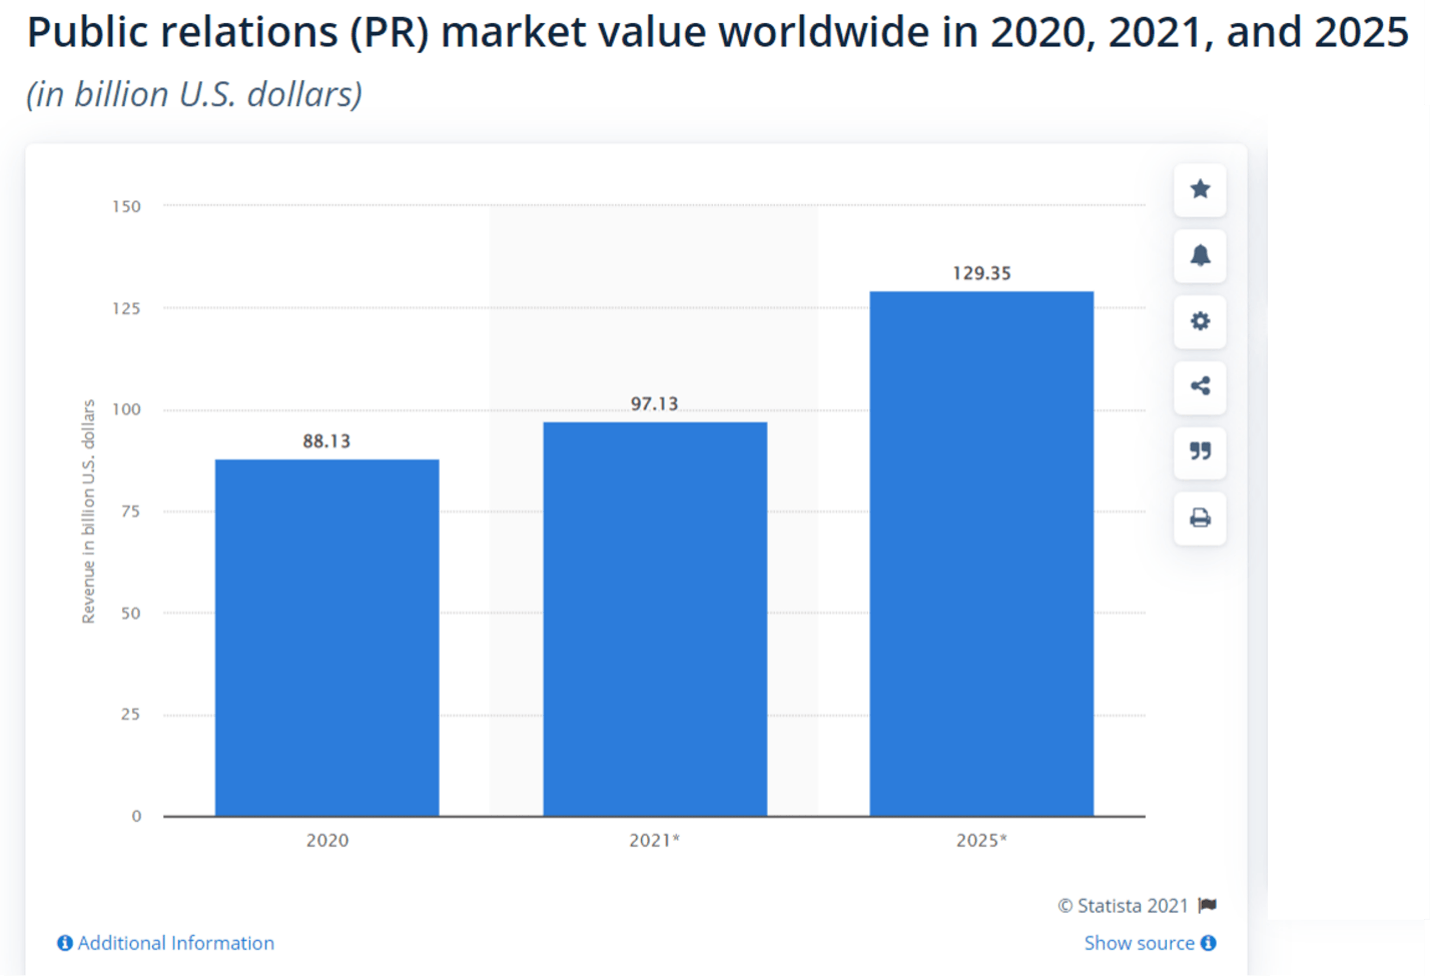 PR:n markkina-arvo vuosina 2020, 2021 ja 2025.